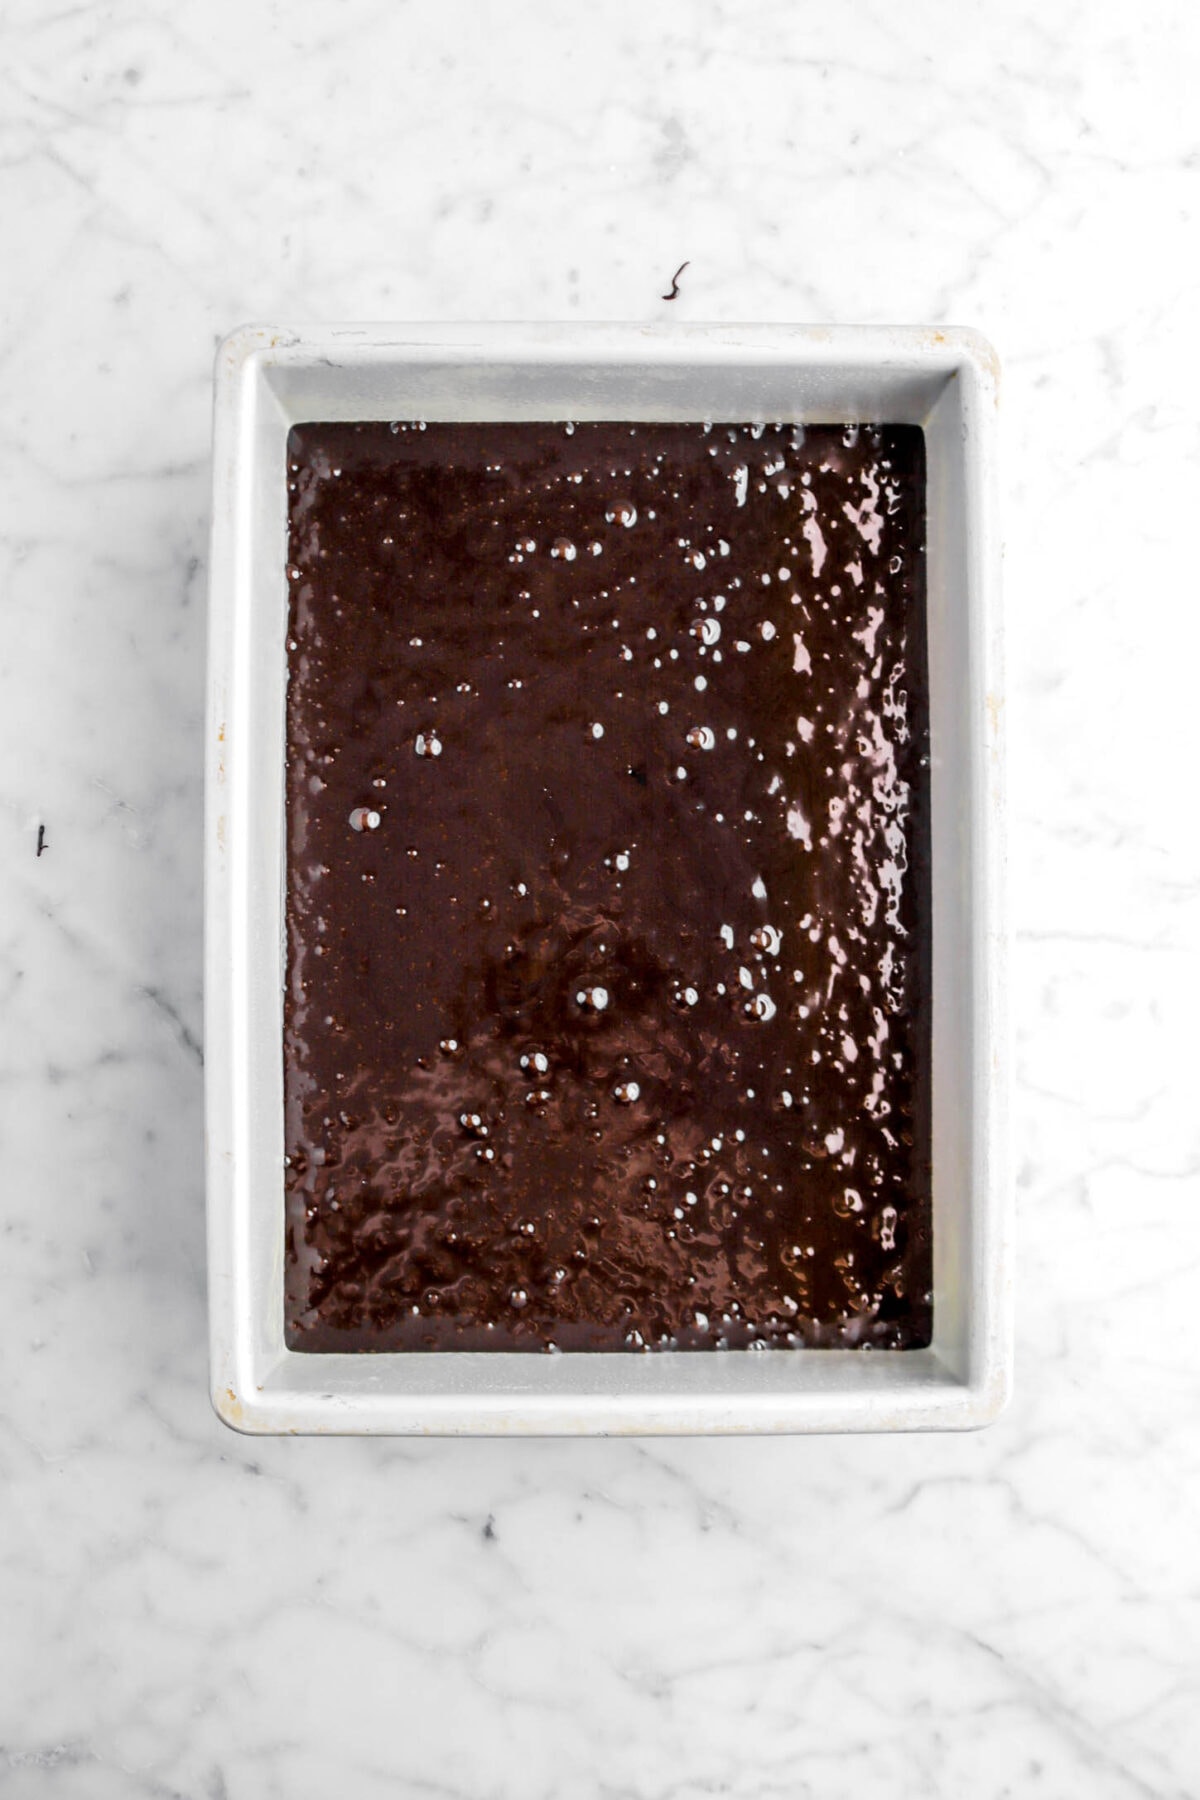 brownie batter in sheet pan.